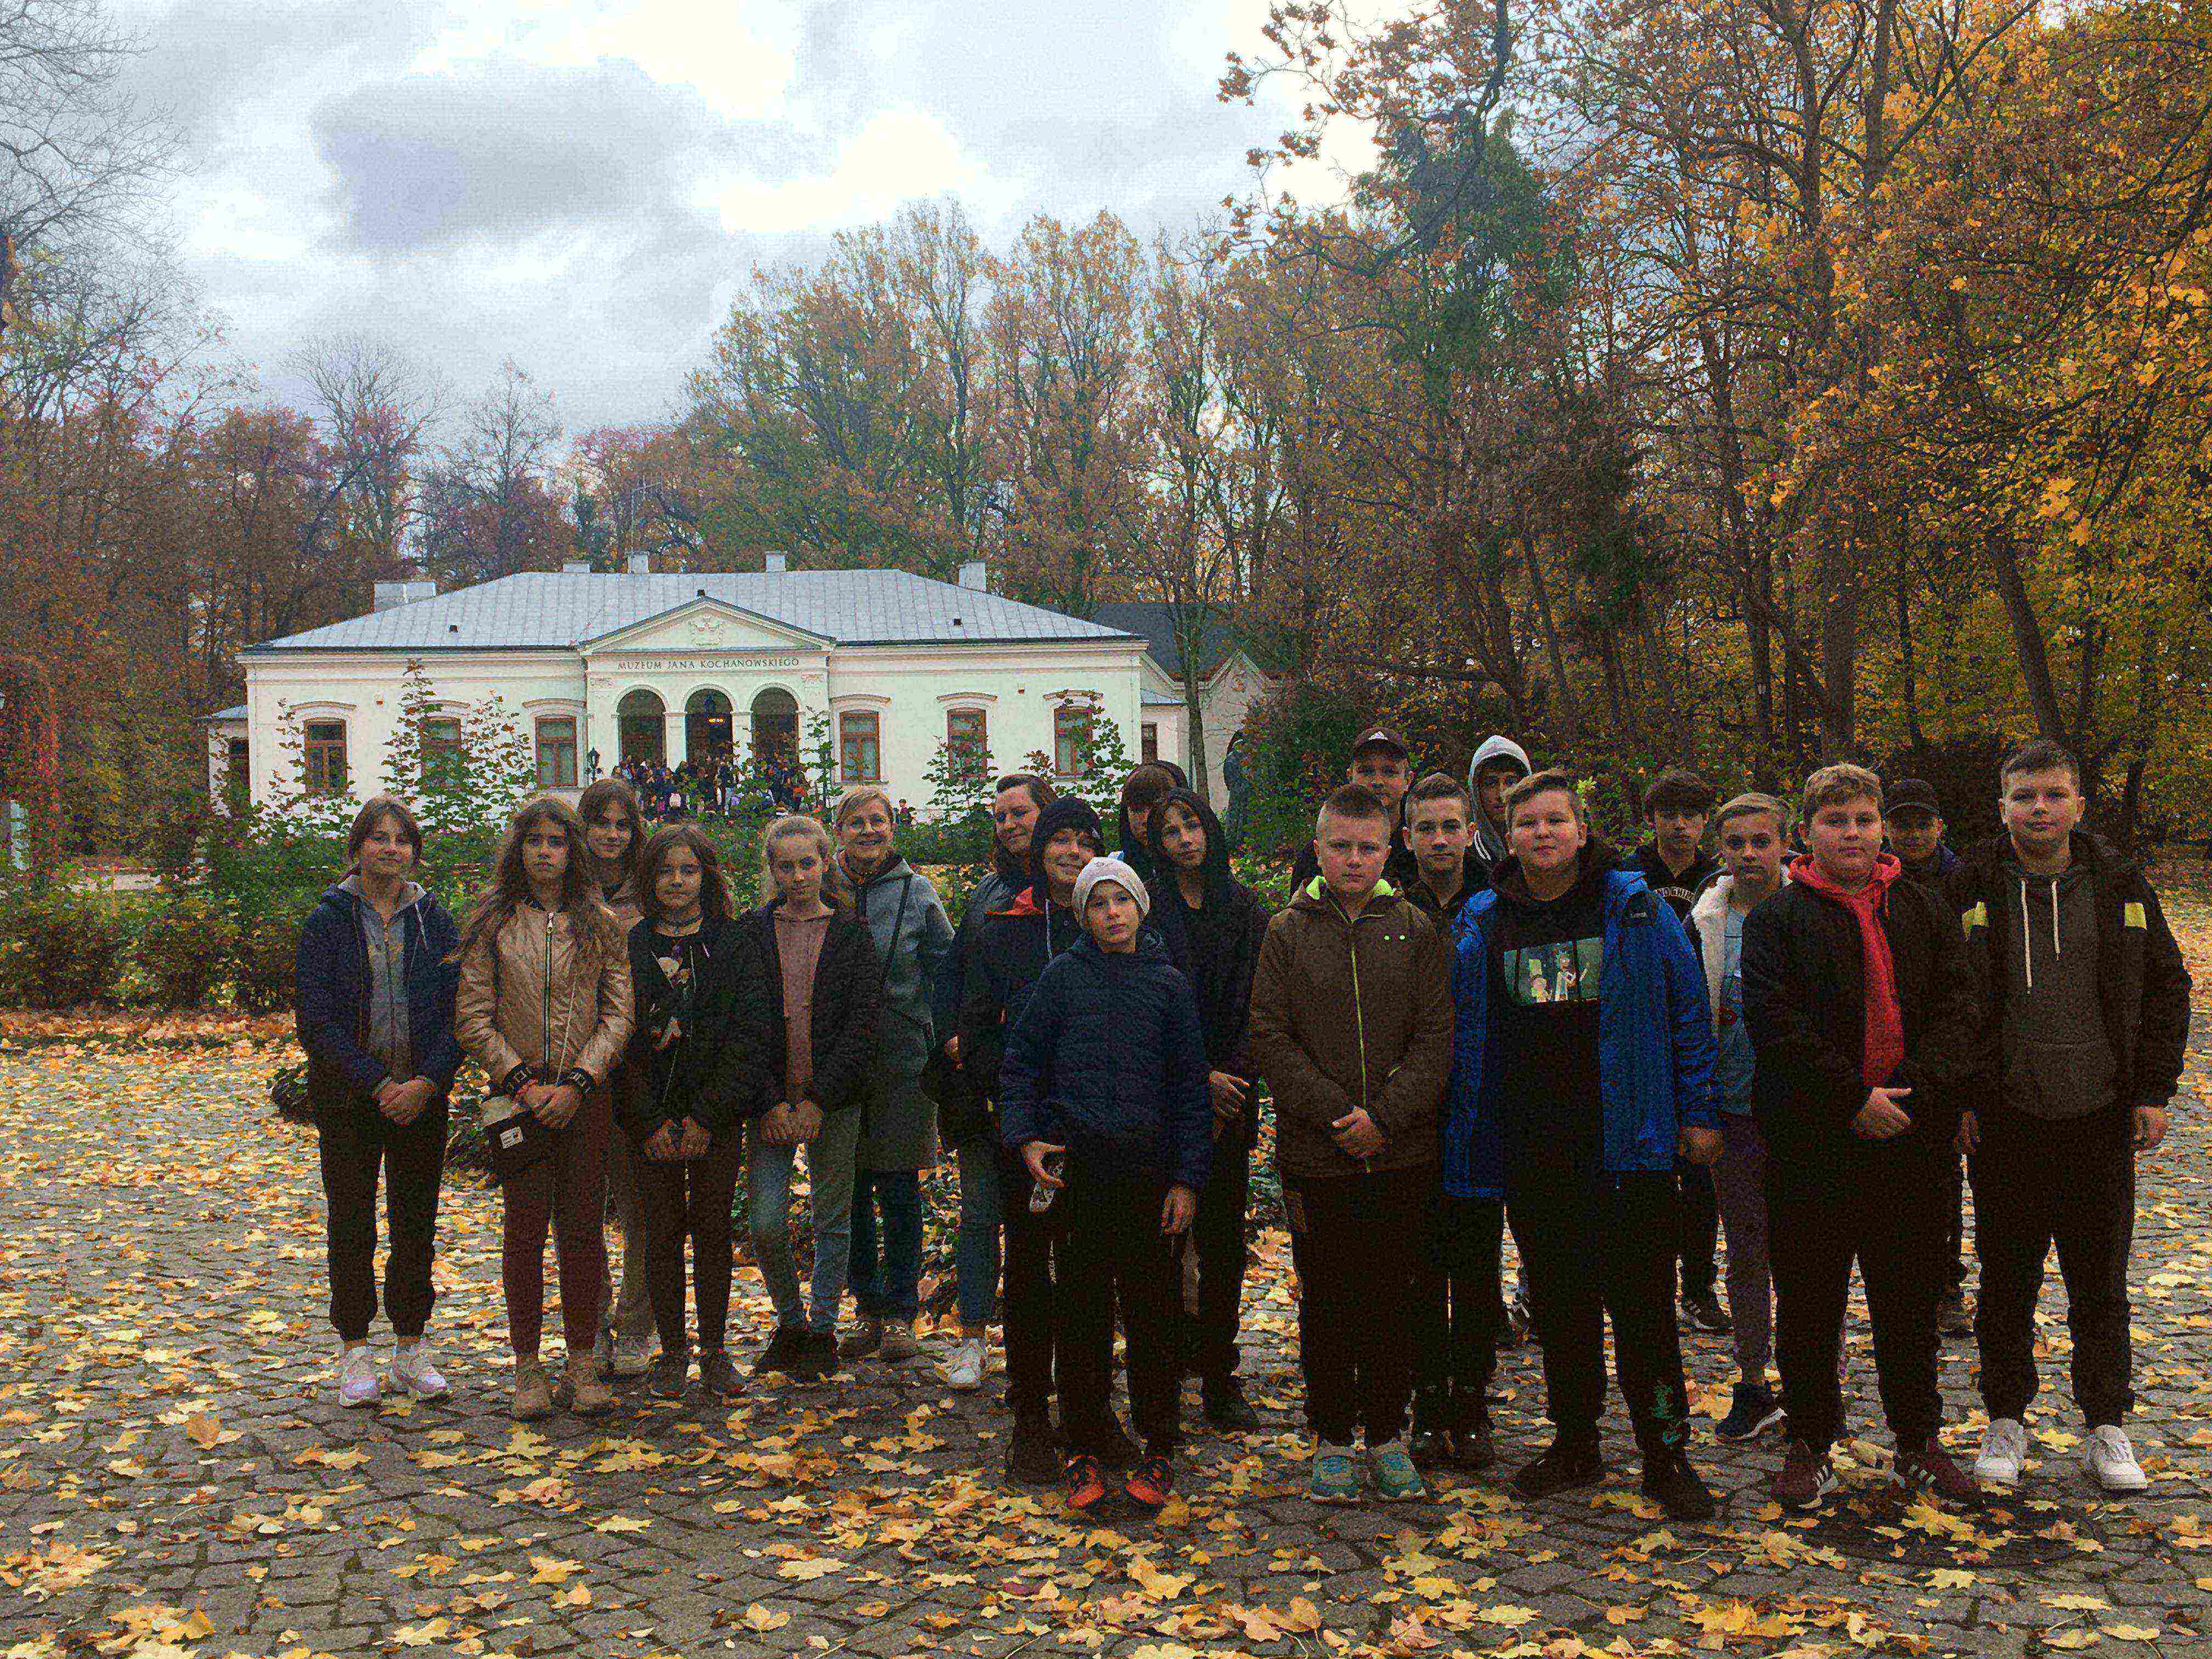 Grupa młodzieży na tle dworku otoczonego parkiem w barwach jesieni